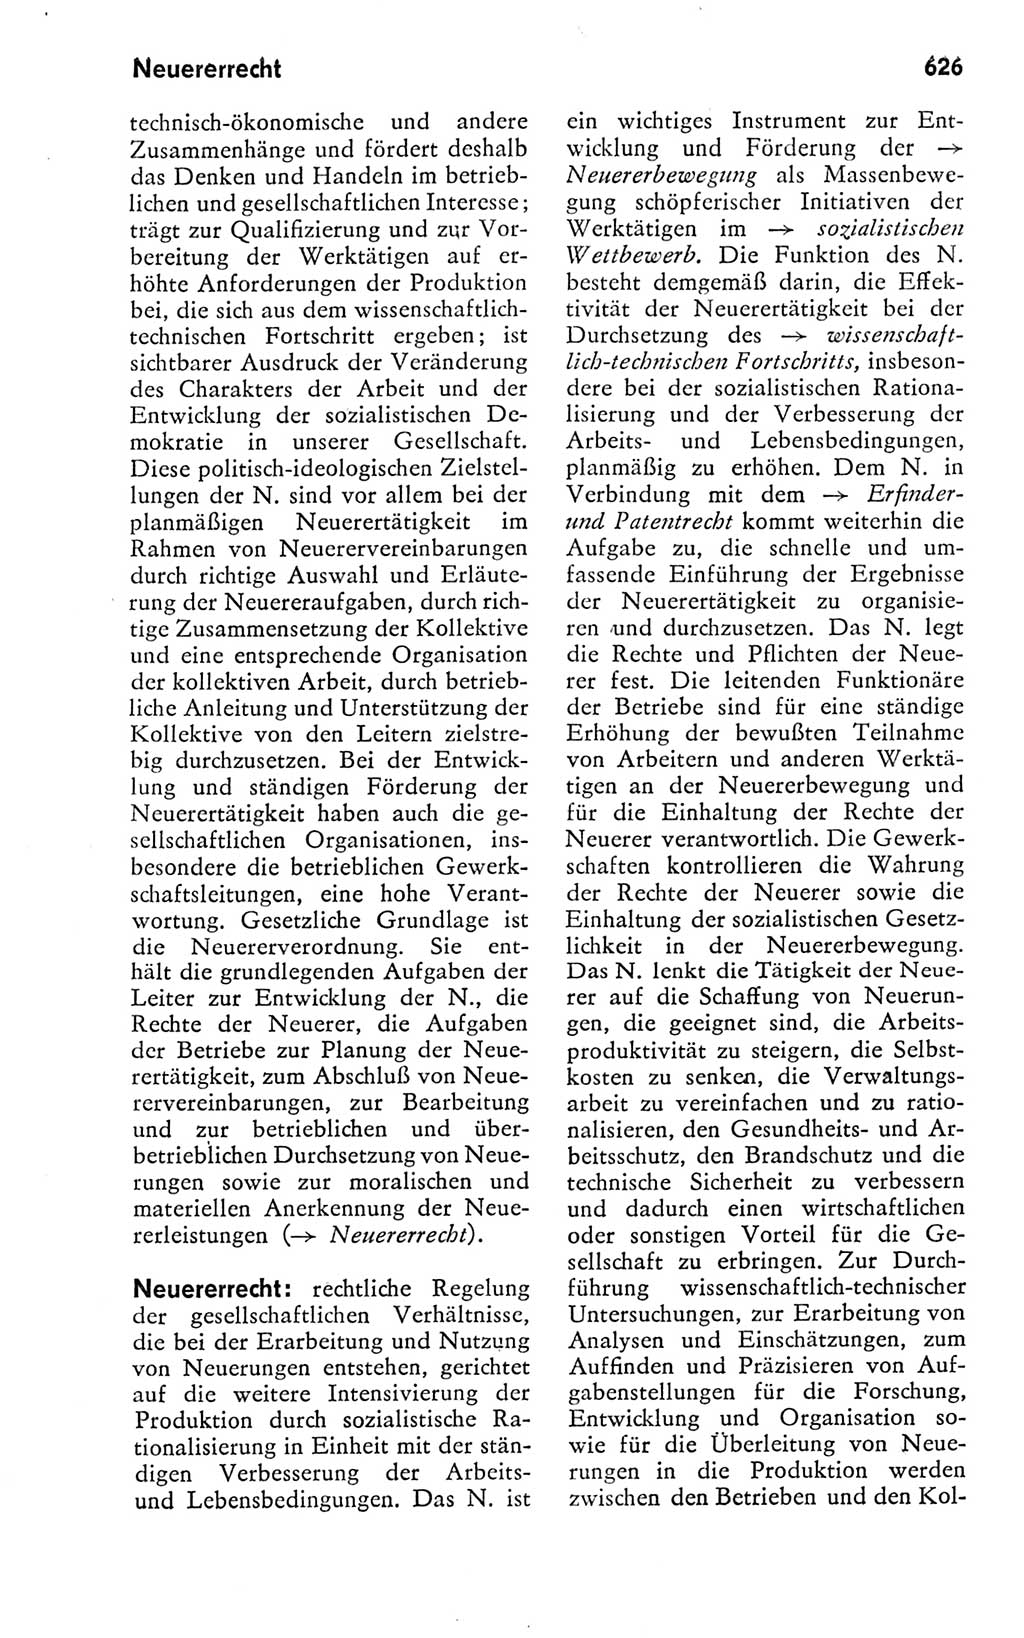 Kleines politisches Wörterbuch [Deutsche Demokratische Republik (DDR)] 1978, Seite 626 (Kl. pol. Wb. DDR 1978, S. 626)